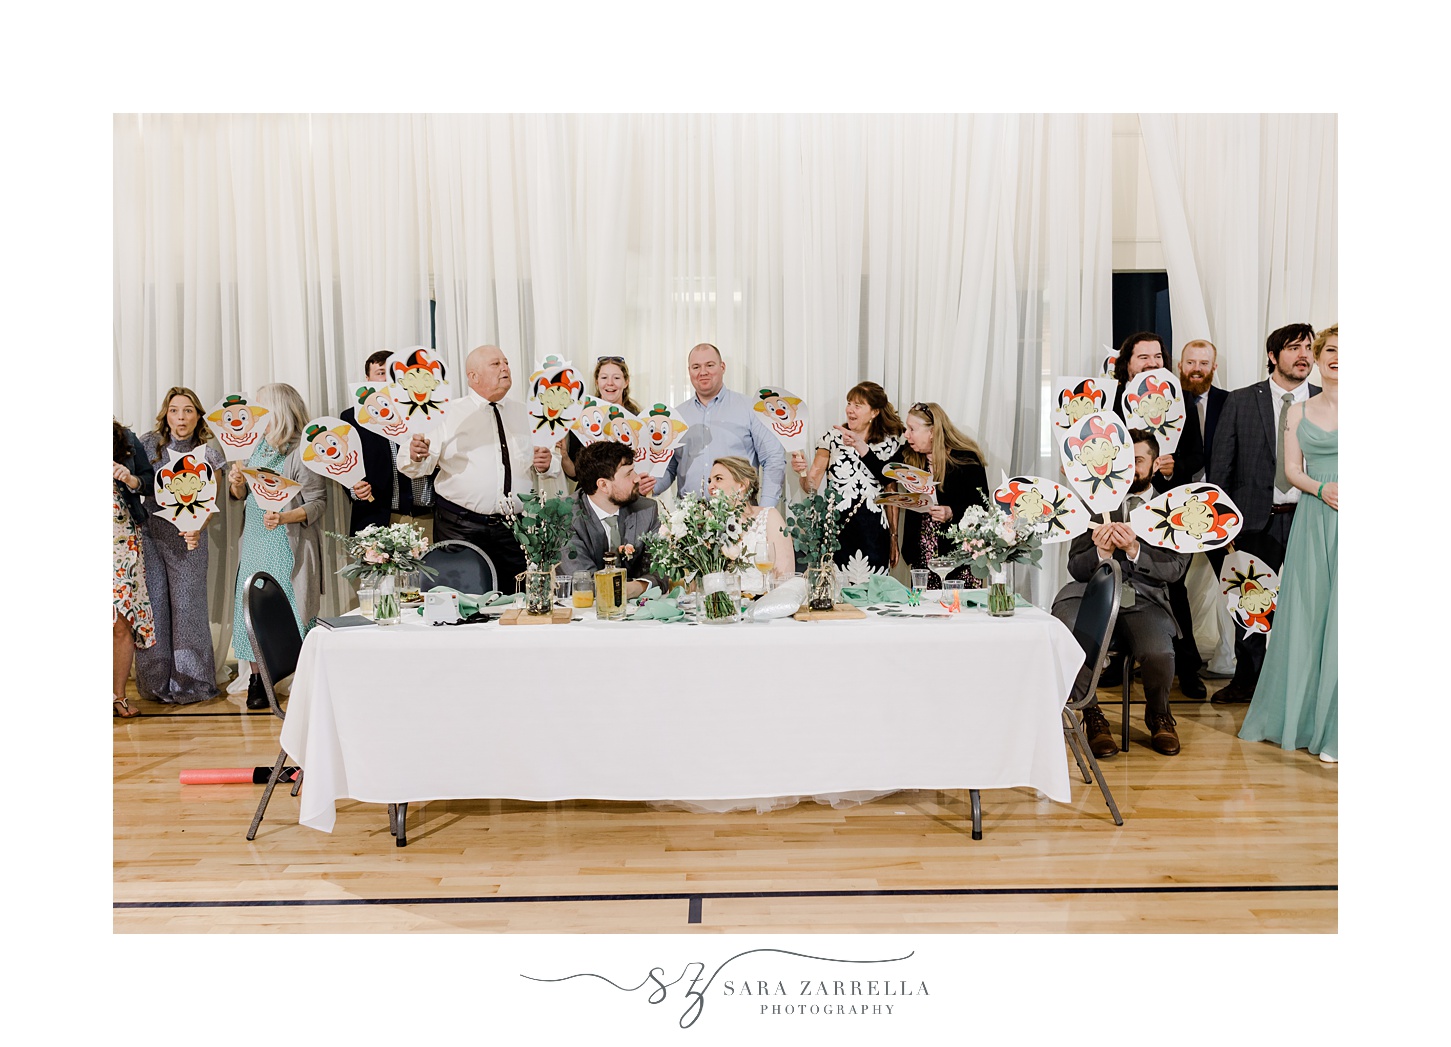 guests pose behind bride and groom holding up joker masks